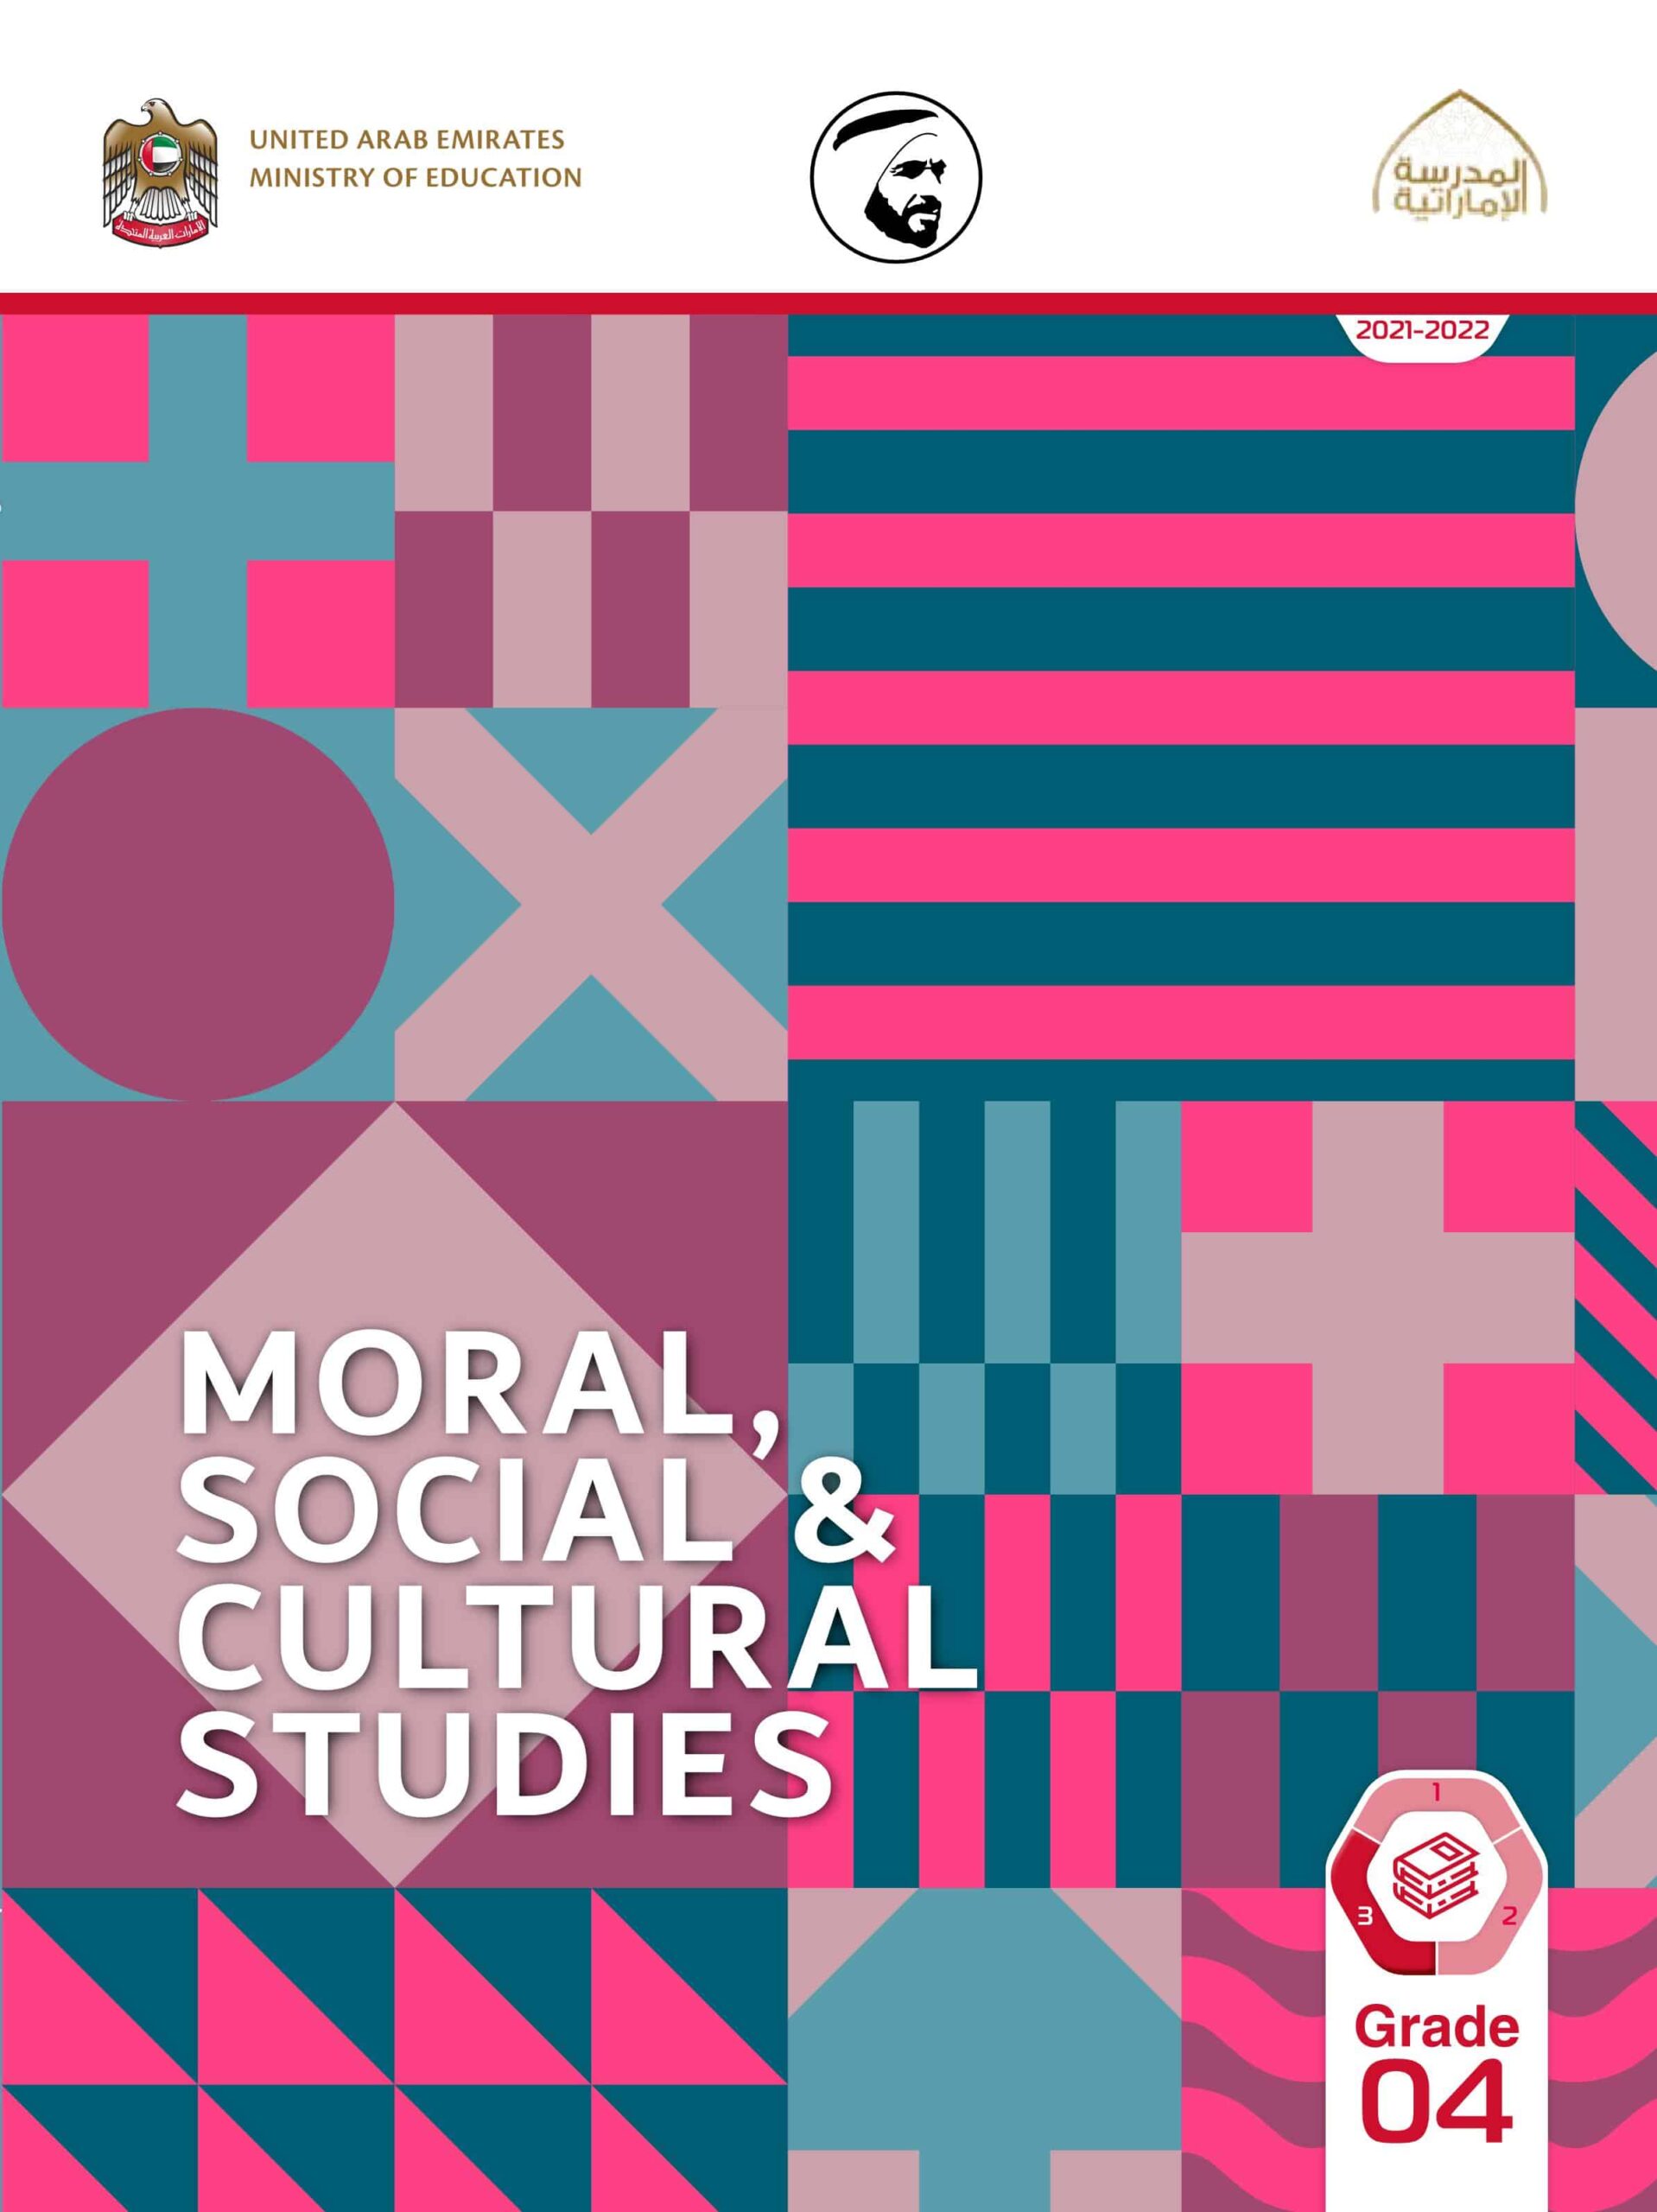 كتاب الطالب لغير الناطقين باللغة العربية Moral, Social & Cultural Studies الصف الرابع الفصل الدراسي الثالث 2021-2022